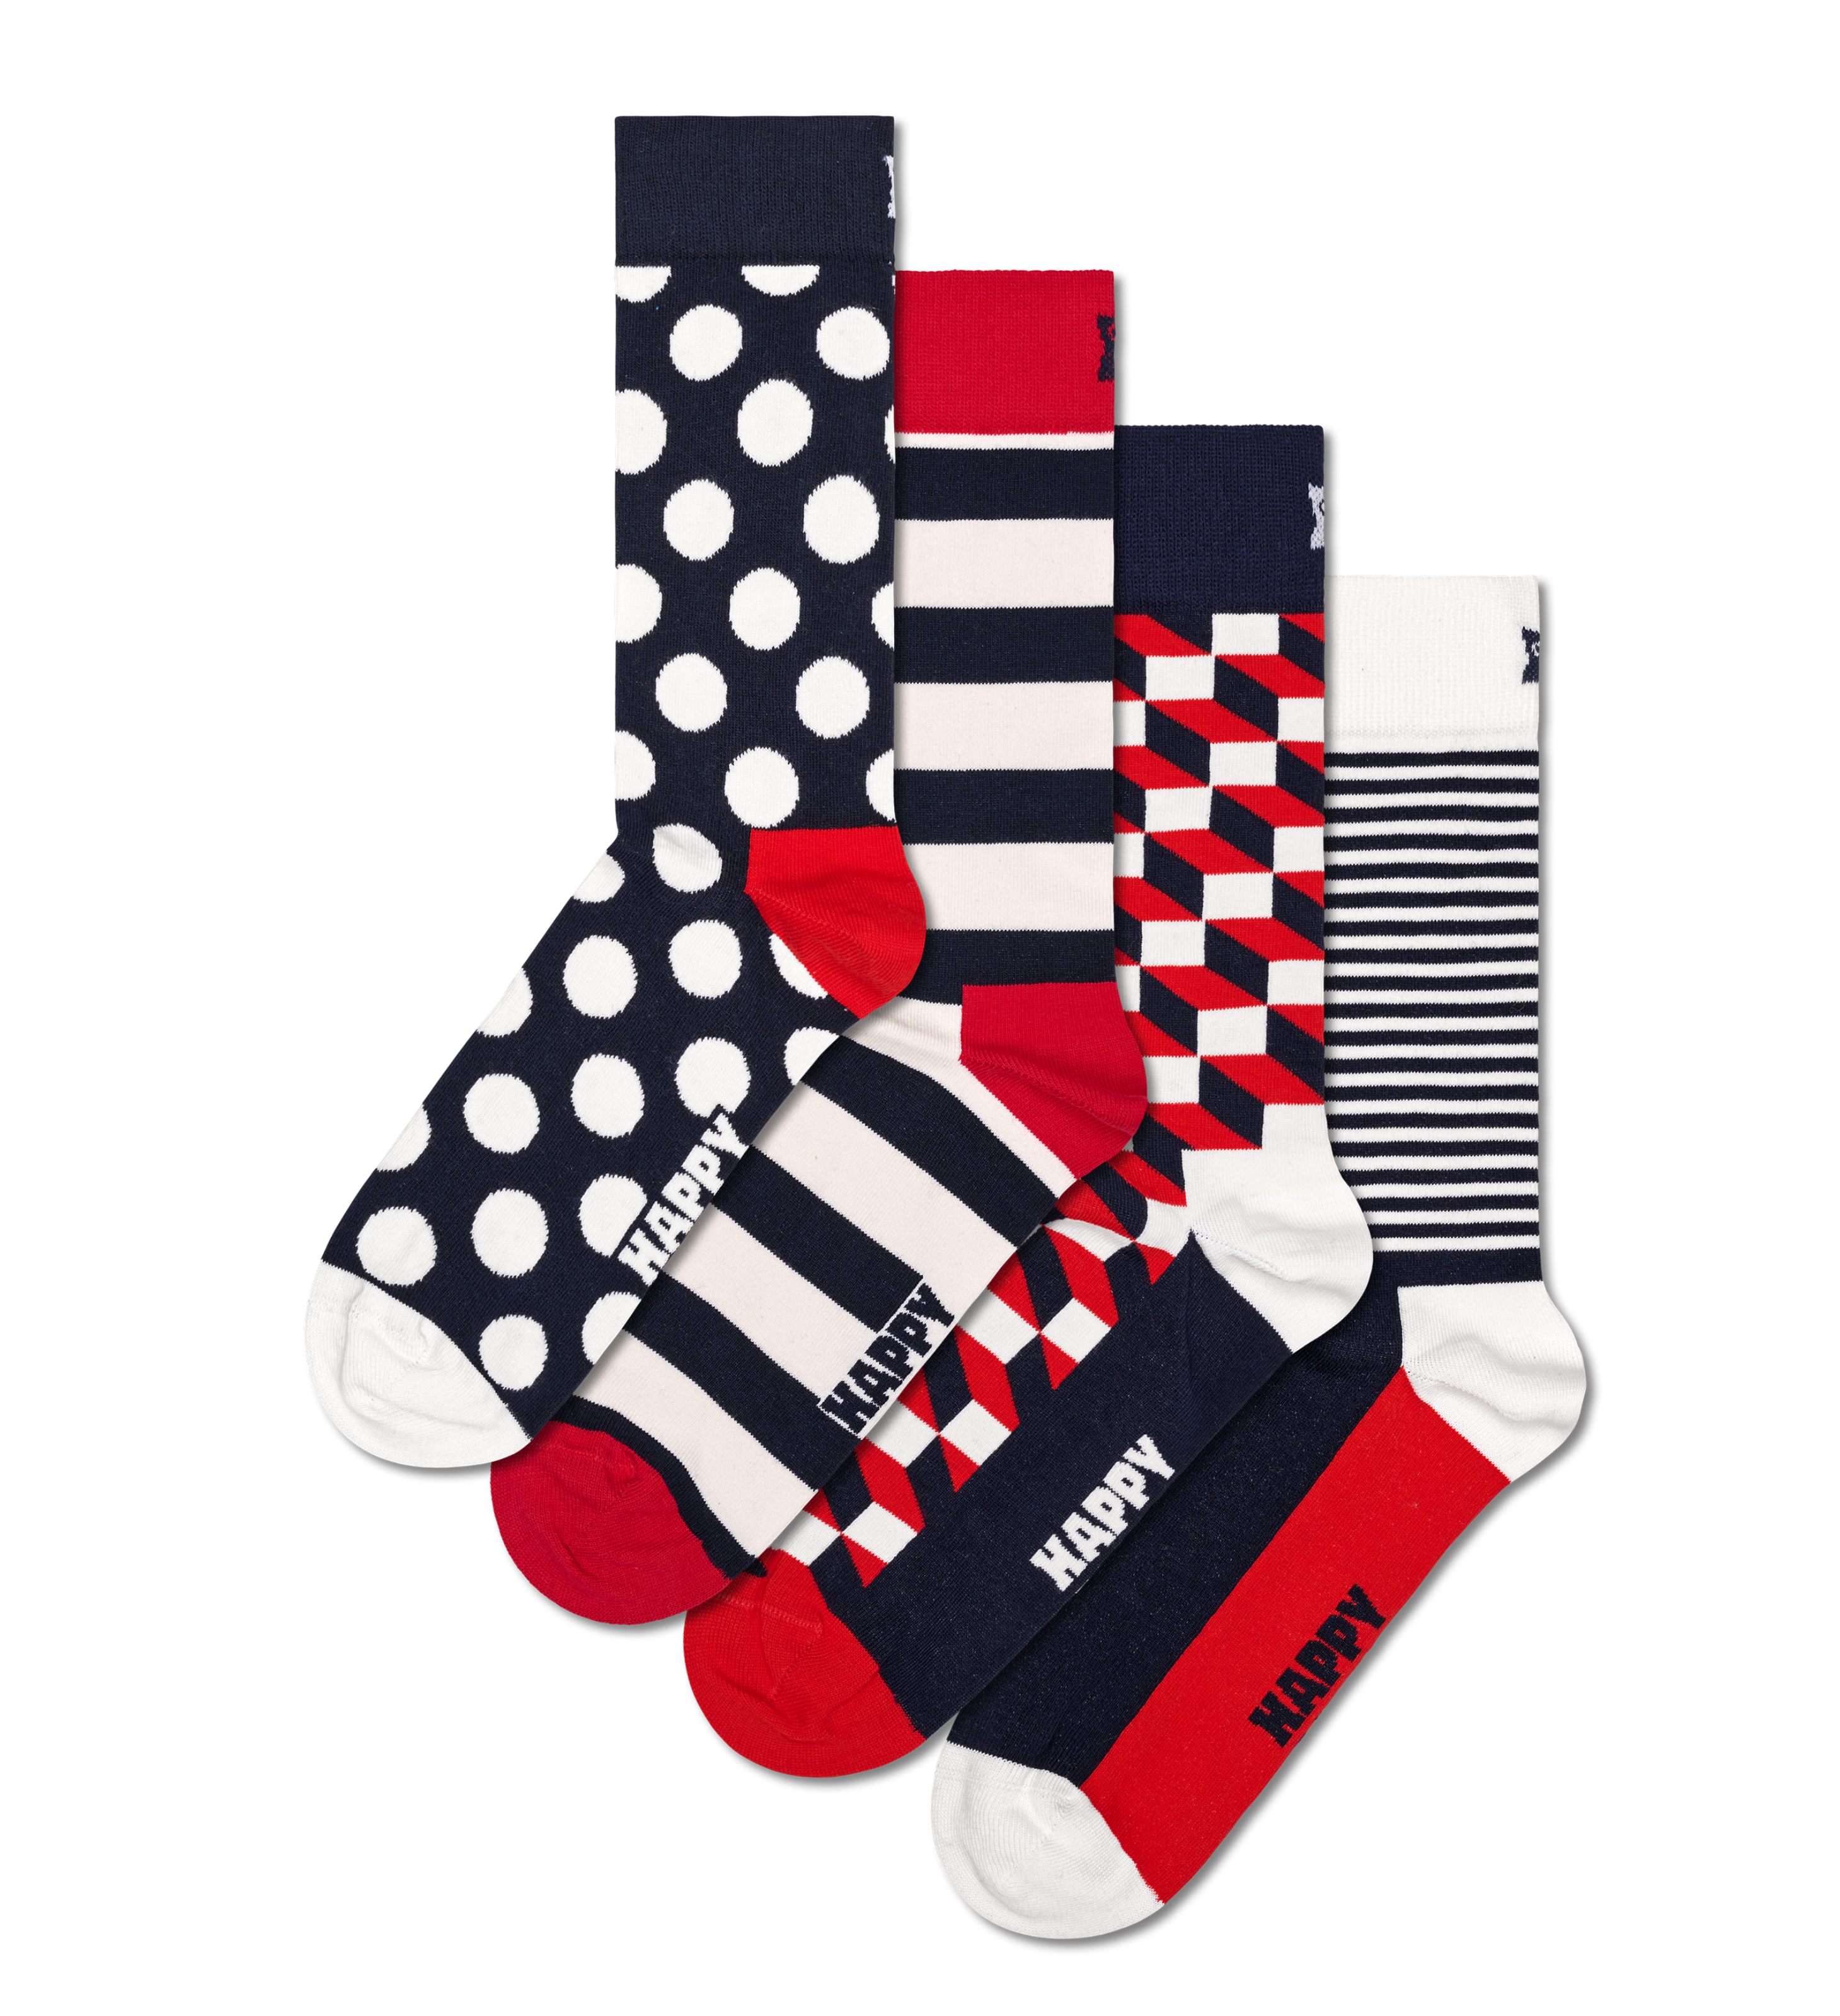 Happy Socks 4-Pack Multi-color Socks - 31£, XMIX09-6050